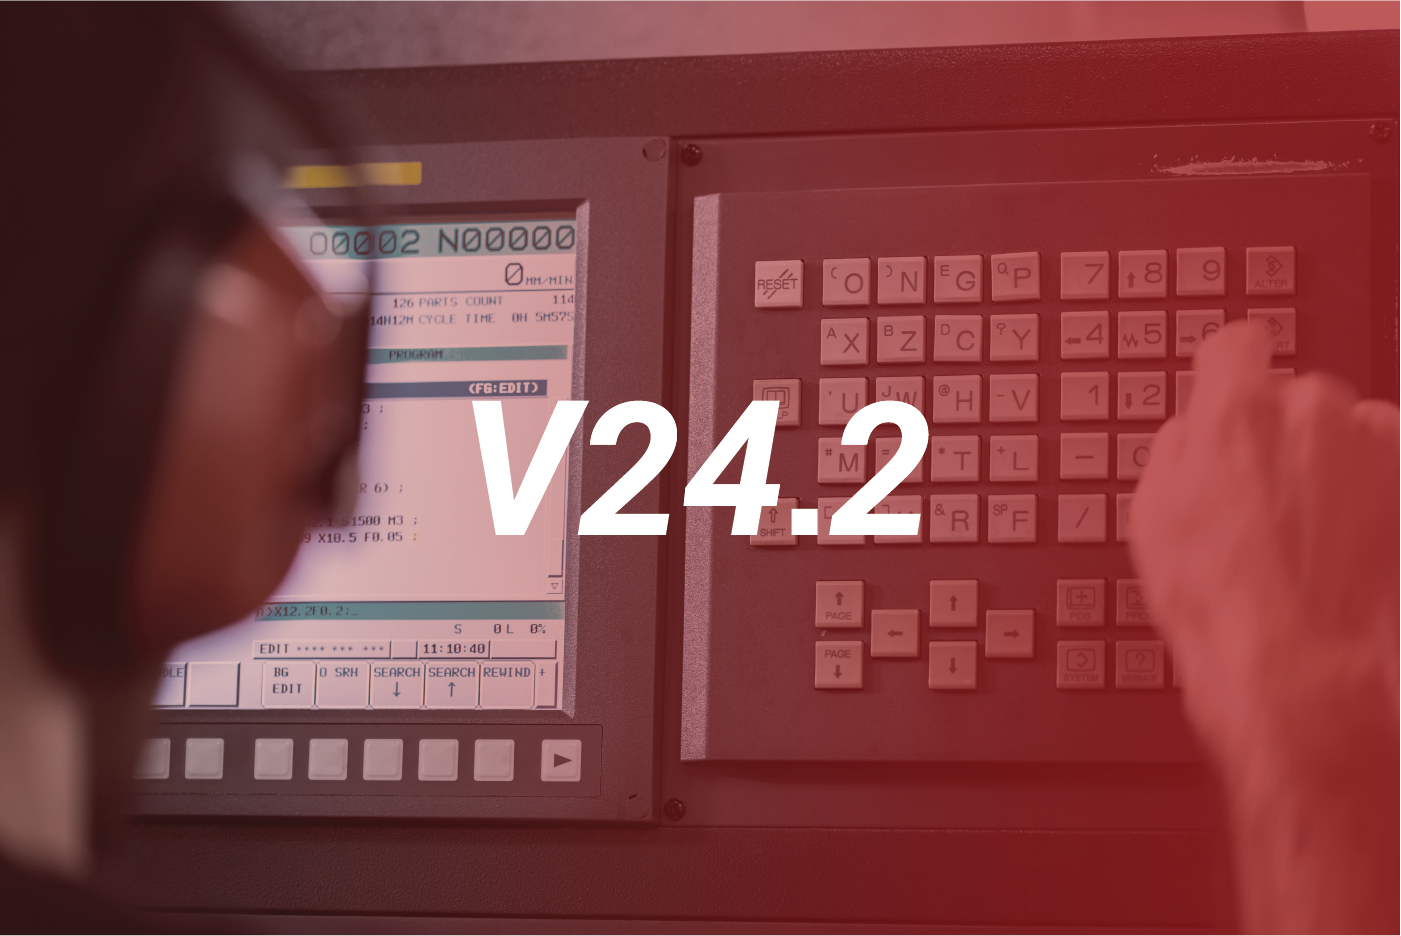 ICAM V24.2 Release